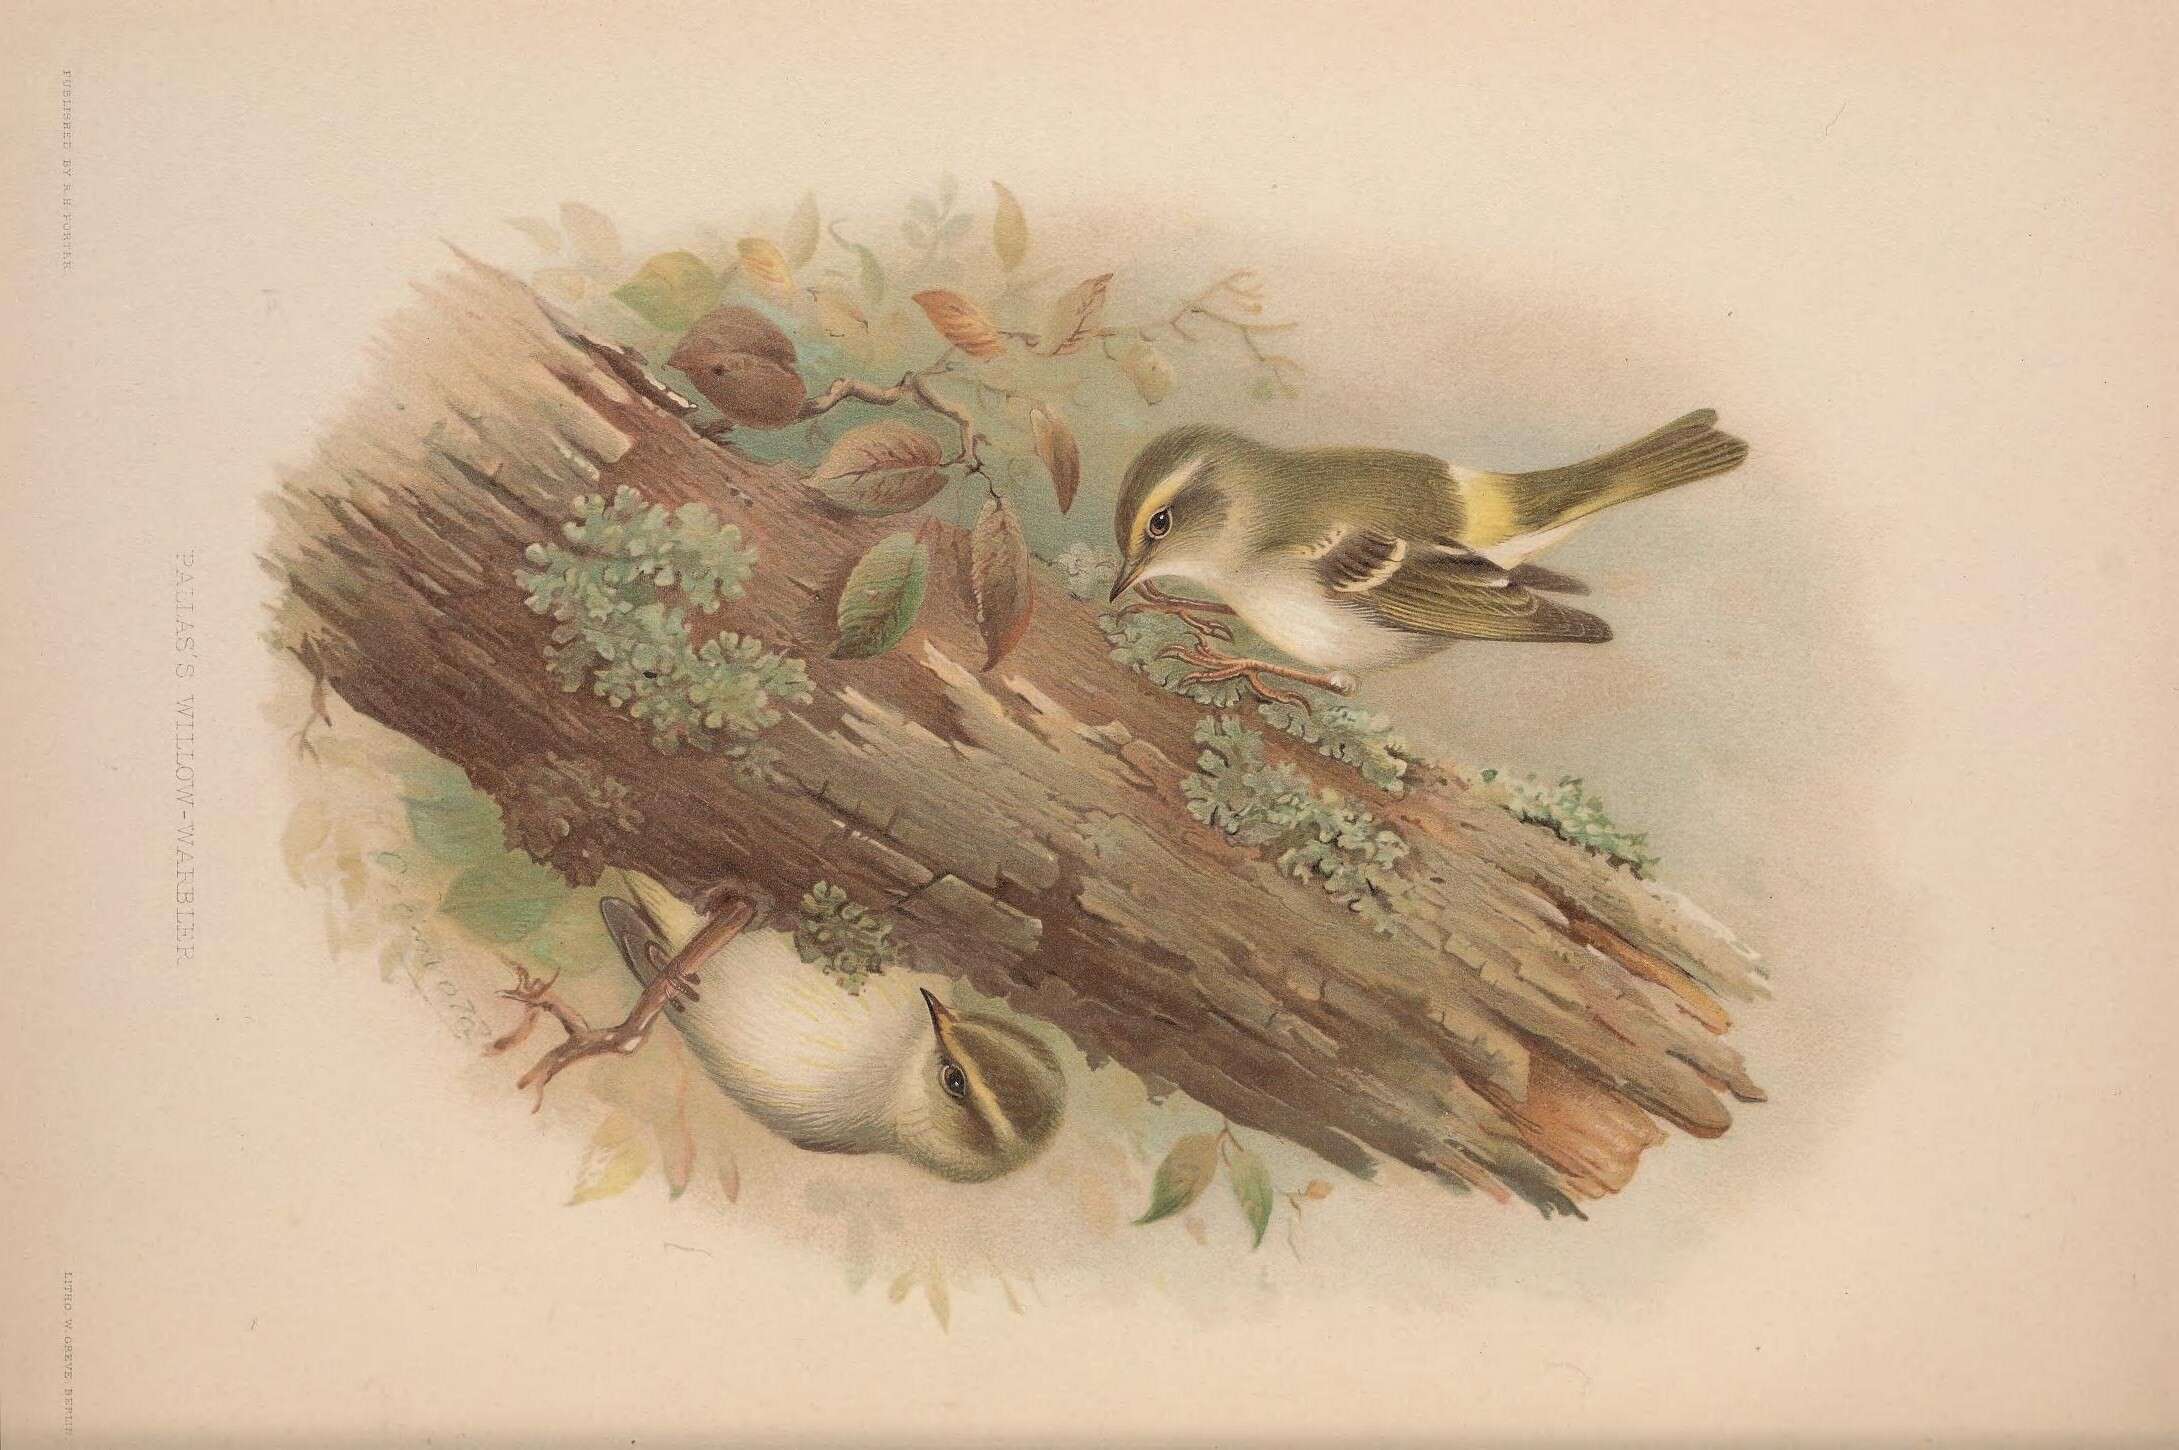 Image of Lemon-rumped Warbler